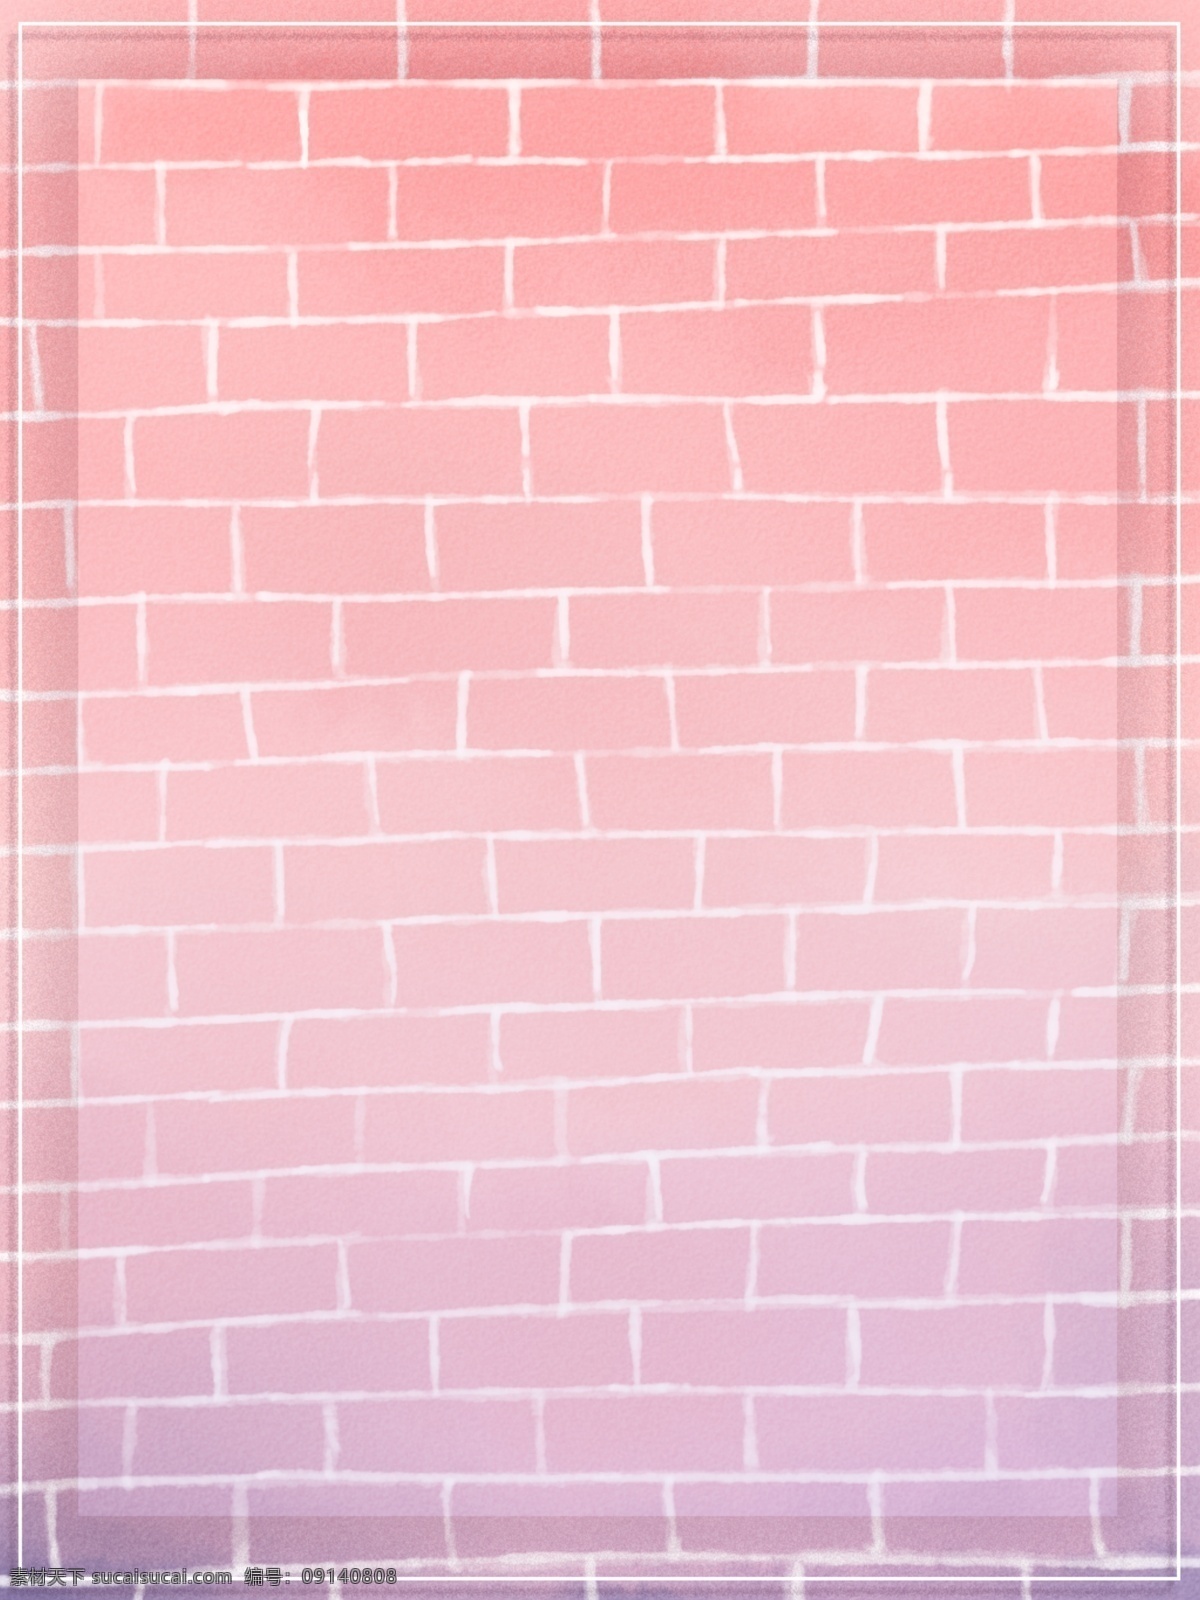 纯 手绘 原创 粉 紫 小 清新 渐变 浪漫 墙 背景 质感 唯美 简约 纯手绘 粉紫色 橘粉色 水彩质感 边框背景 手绘背景 墙面